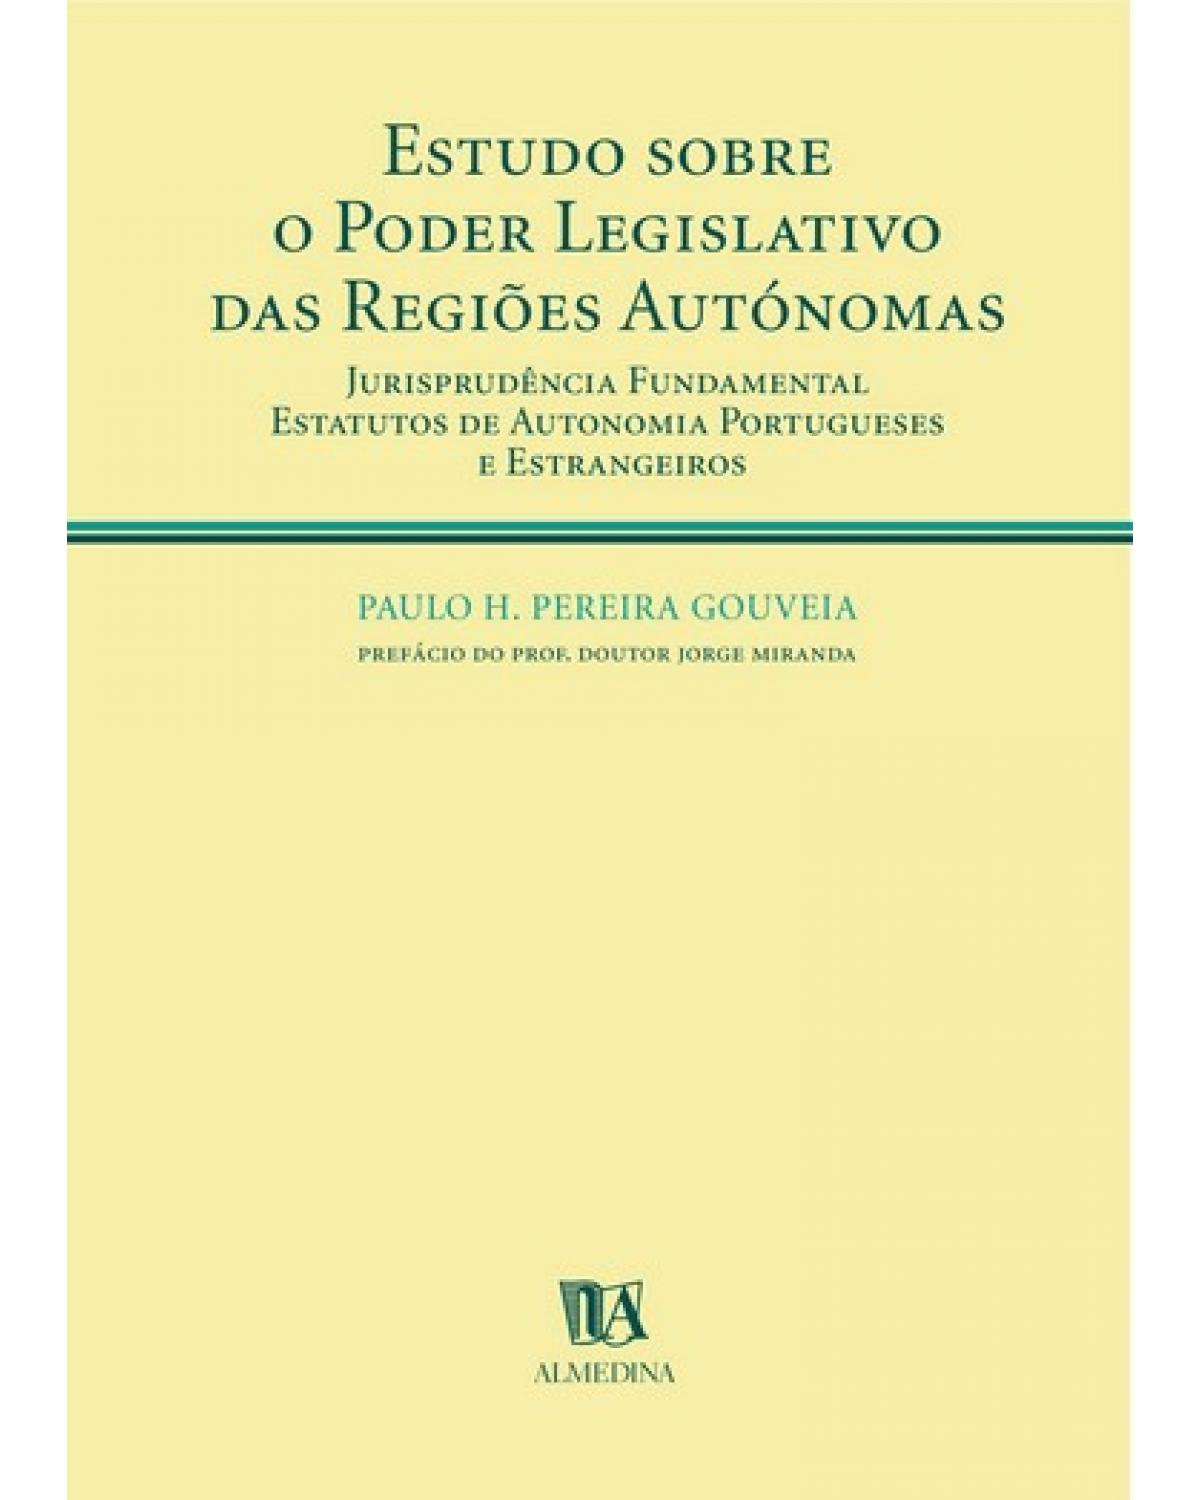 Estudo sobre o poder legislativo das regiões autónomas - jurisprudência fundamental - Estatutos de autonomia portugueses e estrangeiros - 1ª Edição | 2003